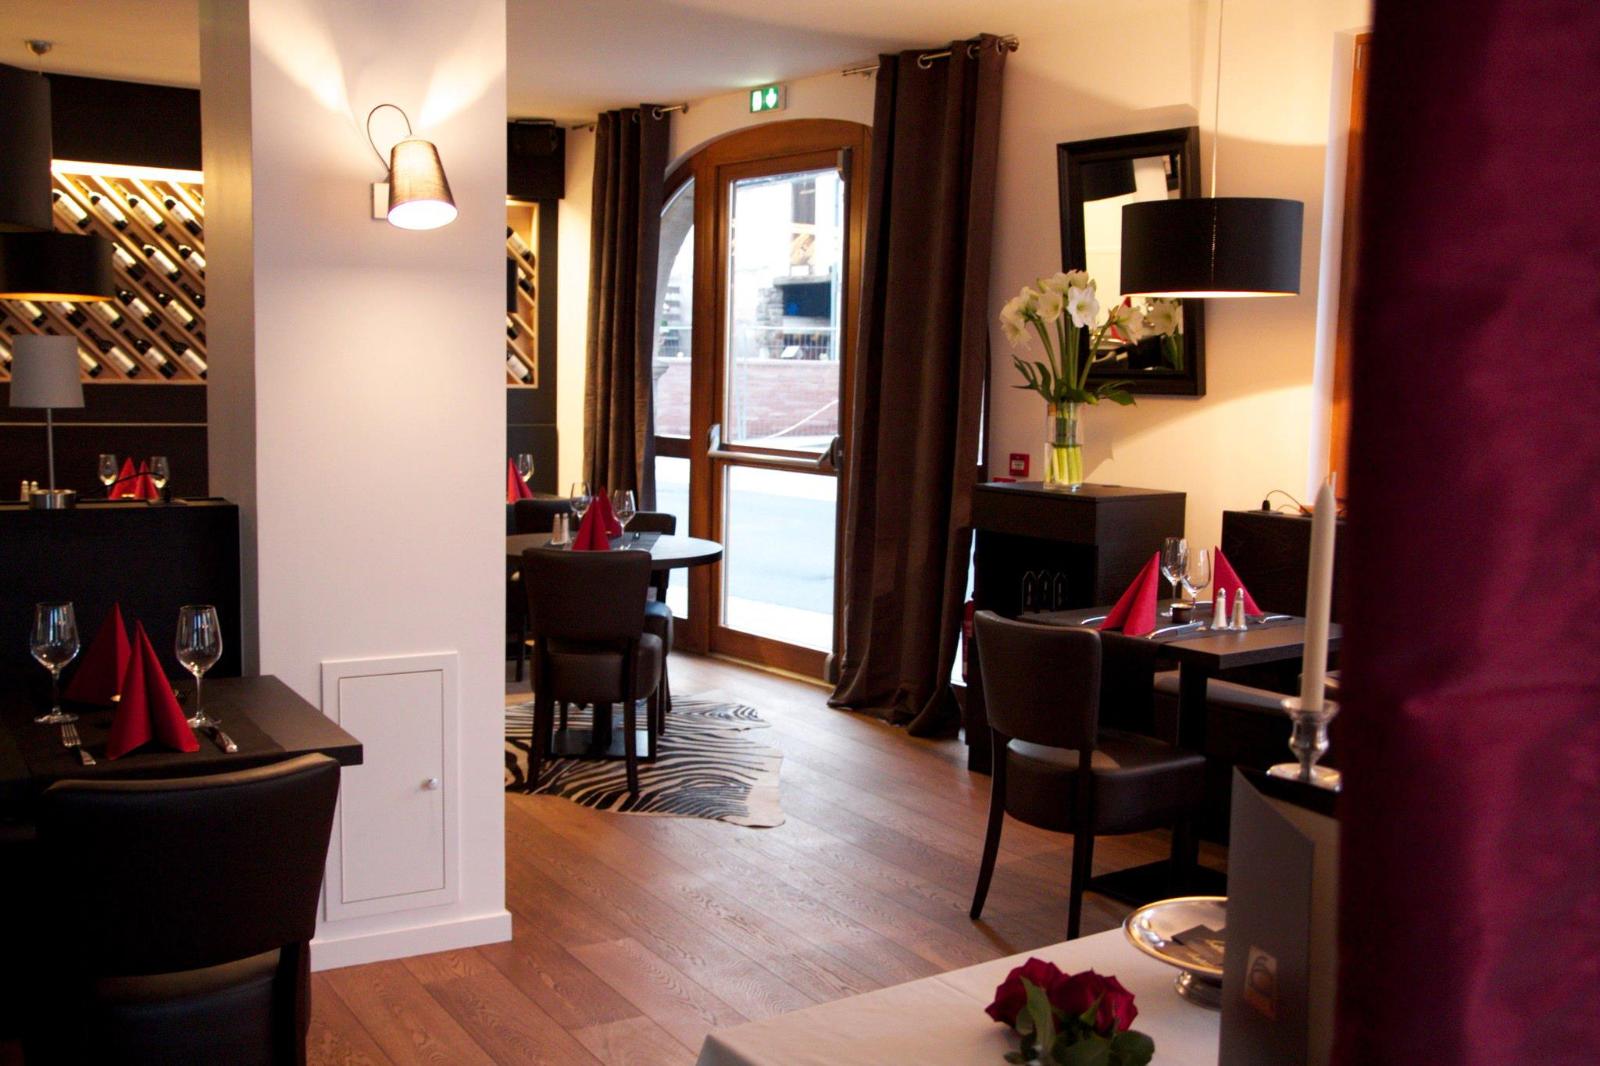 Restaurant Anatable vous accueille à Dinsheim-sur-Bruche dans le département du Bas-Rhin.